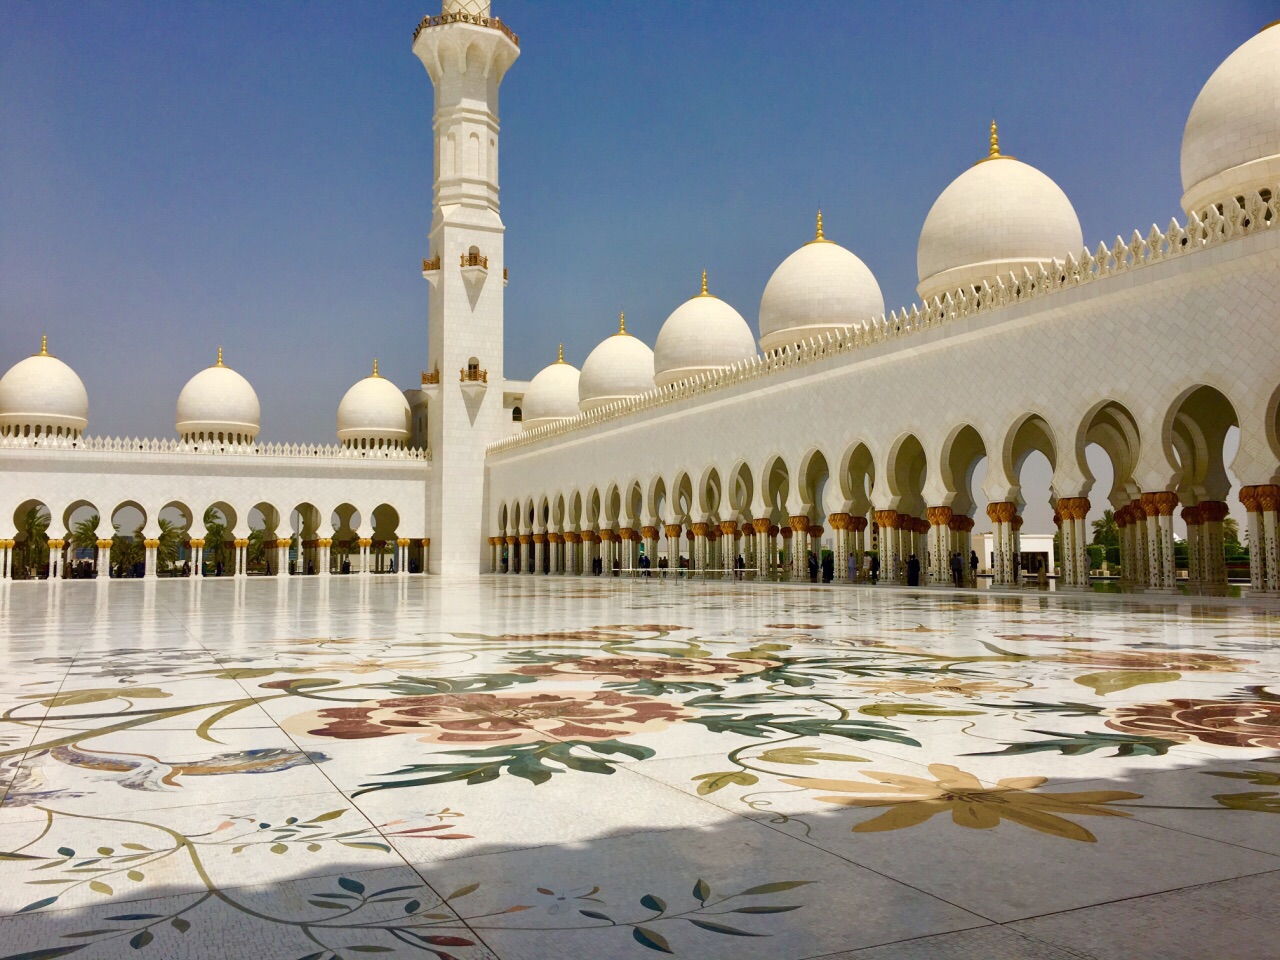 阿布扎比大清真寺 阿布扎比大清真寺又名谢赫扎耶德清真寺 位于阿联酋首都阿布扎比 恢弘、庄重、大气、奢